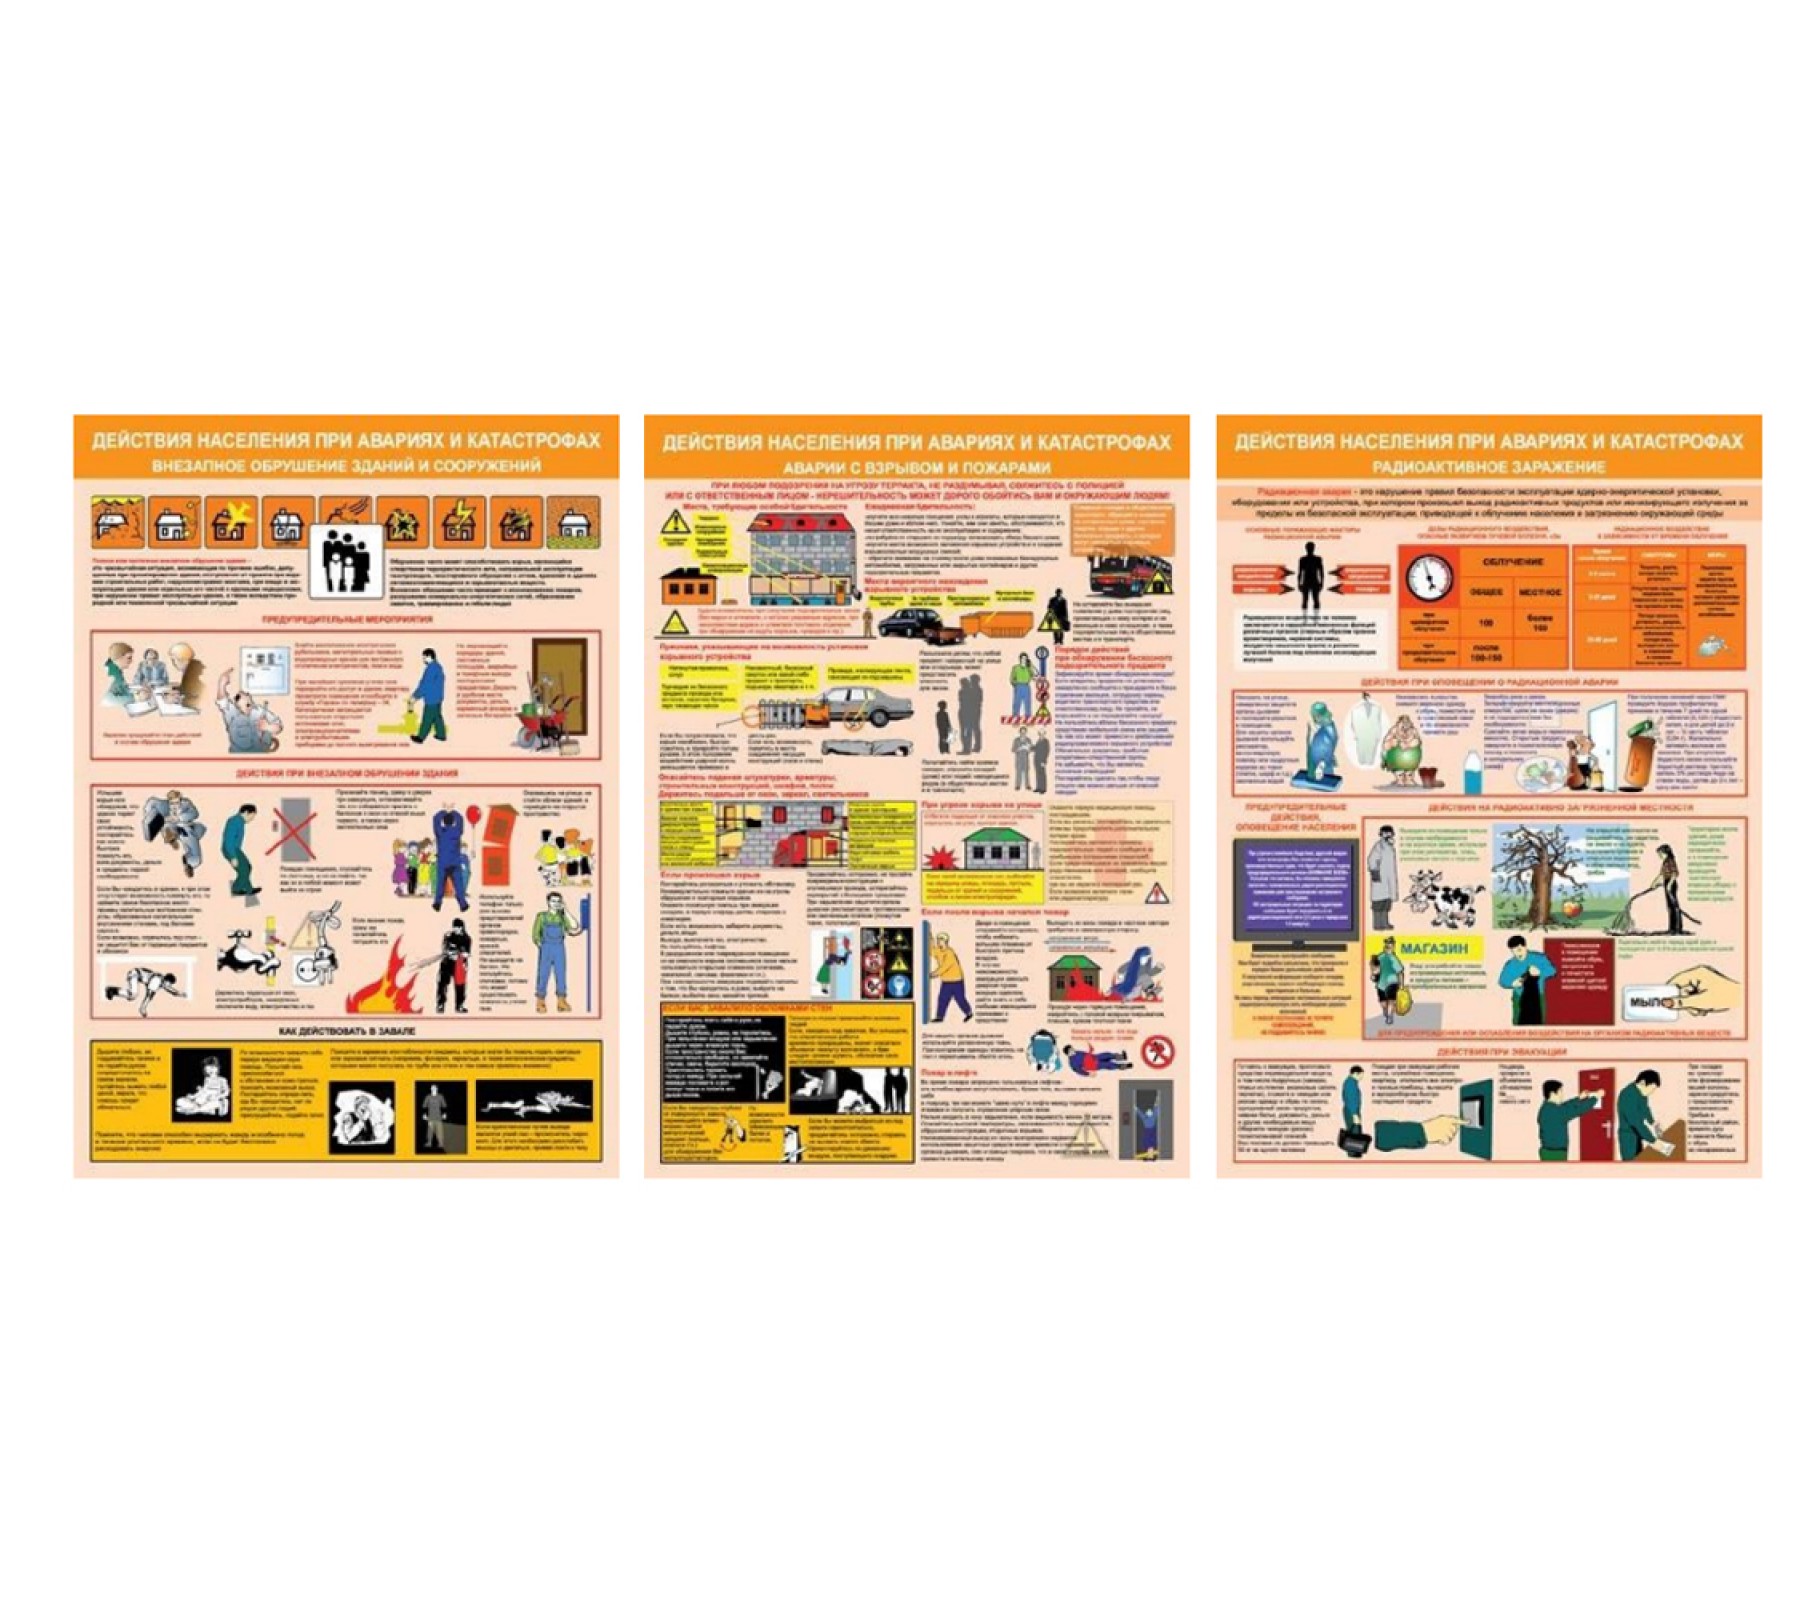 Комплект плакатов "Действия населения при авариях и катастрофах"